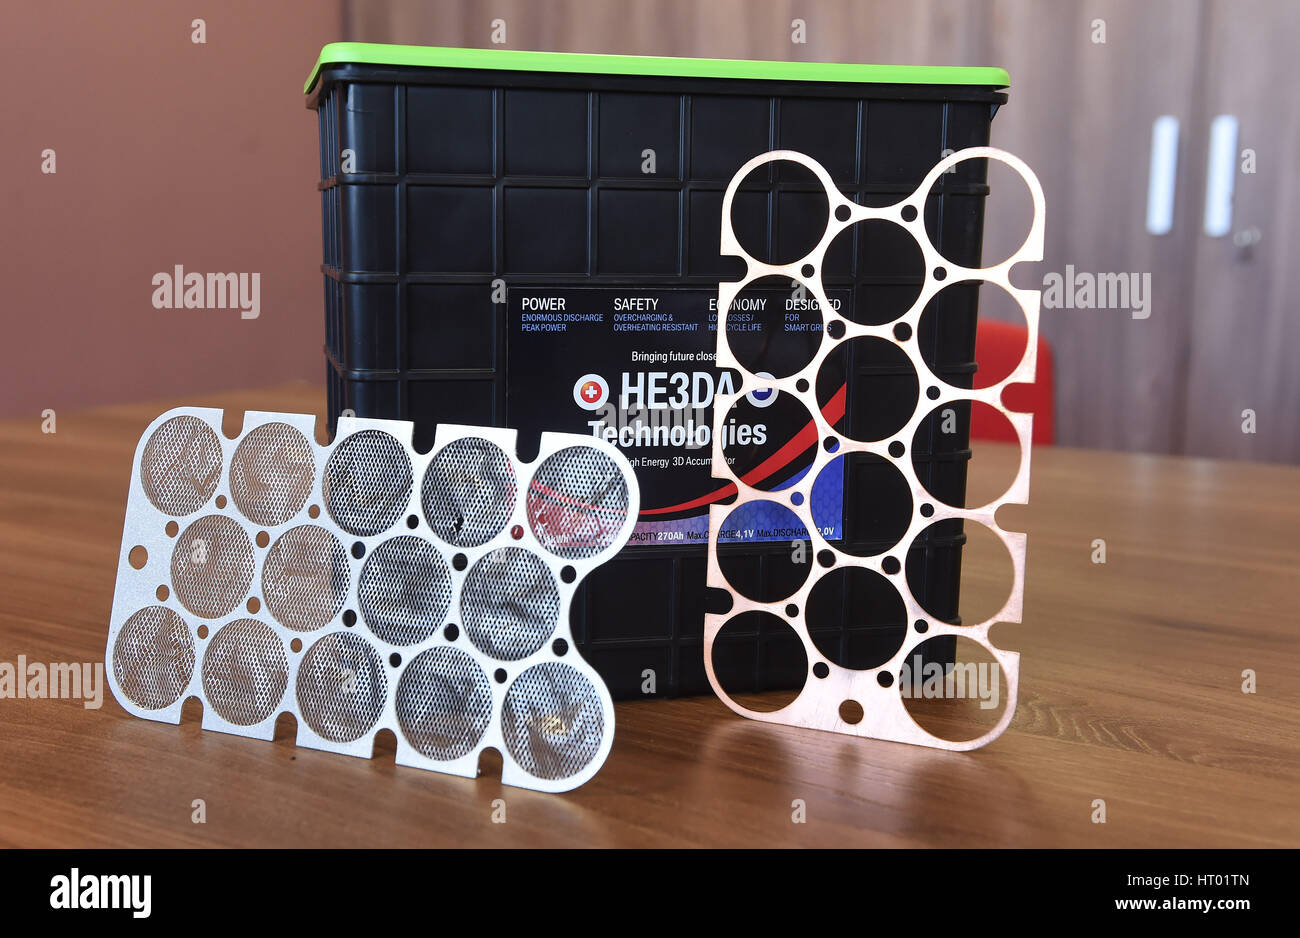 Tschechische Firma HE3DA, Entwicklung von Batterietechnologien, Kc5.5bn Projekt Magna Energiespeicher für Batterie startet Produktion in dem bis zu 250 Personen sind, Arbeit zu finden, sagte Miteigentümer des Unternehmens Vladimir Jirka und Radomir Prus CTK. Das Unternehmen will bauen zwei Linien zur Herstellung von Akkumulatoren mit 3D Elektroden auf der Grundlage von Lithium Nano-Materialien und eine neue Halle für die weitere Entwicklung gestaltet. Die Produktion soll im nächsten Jahr beginnen und erwartet einen Jahresumsatz sind um $450 m (Kc11.5bn) zu erreichen. Die Akkumulatoren werden hauptsächlich für den Export. Die Projekte basiert auf weltweit eingetragenes patent Stockfoto